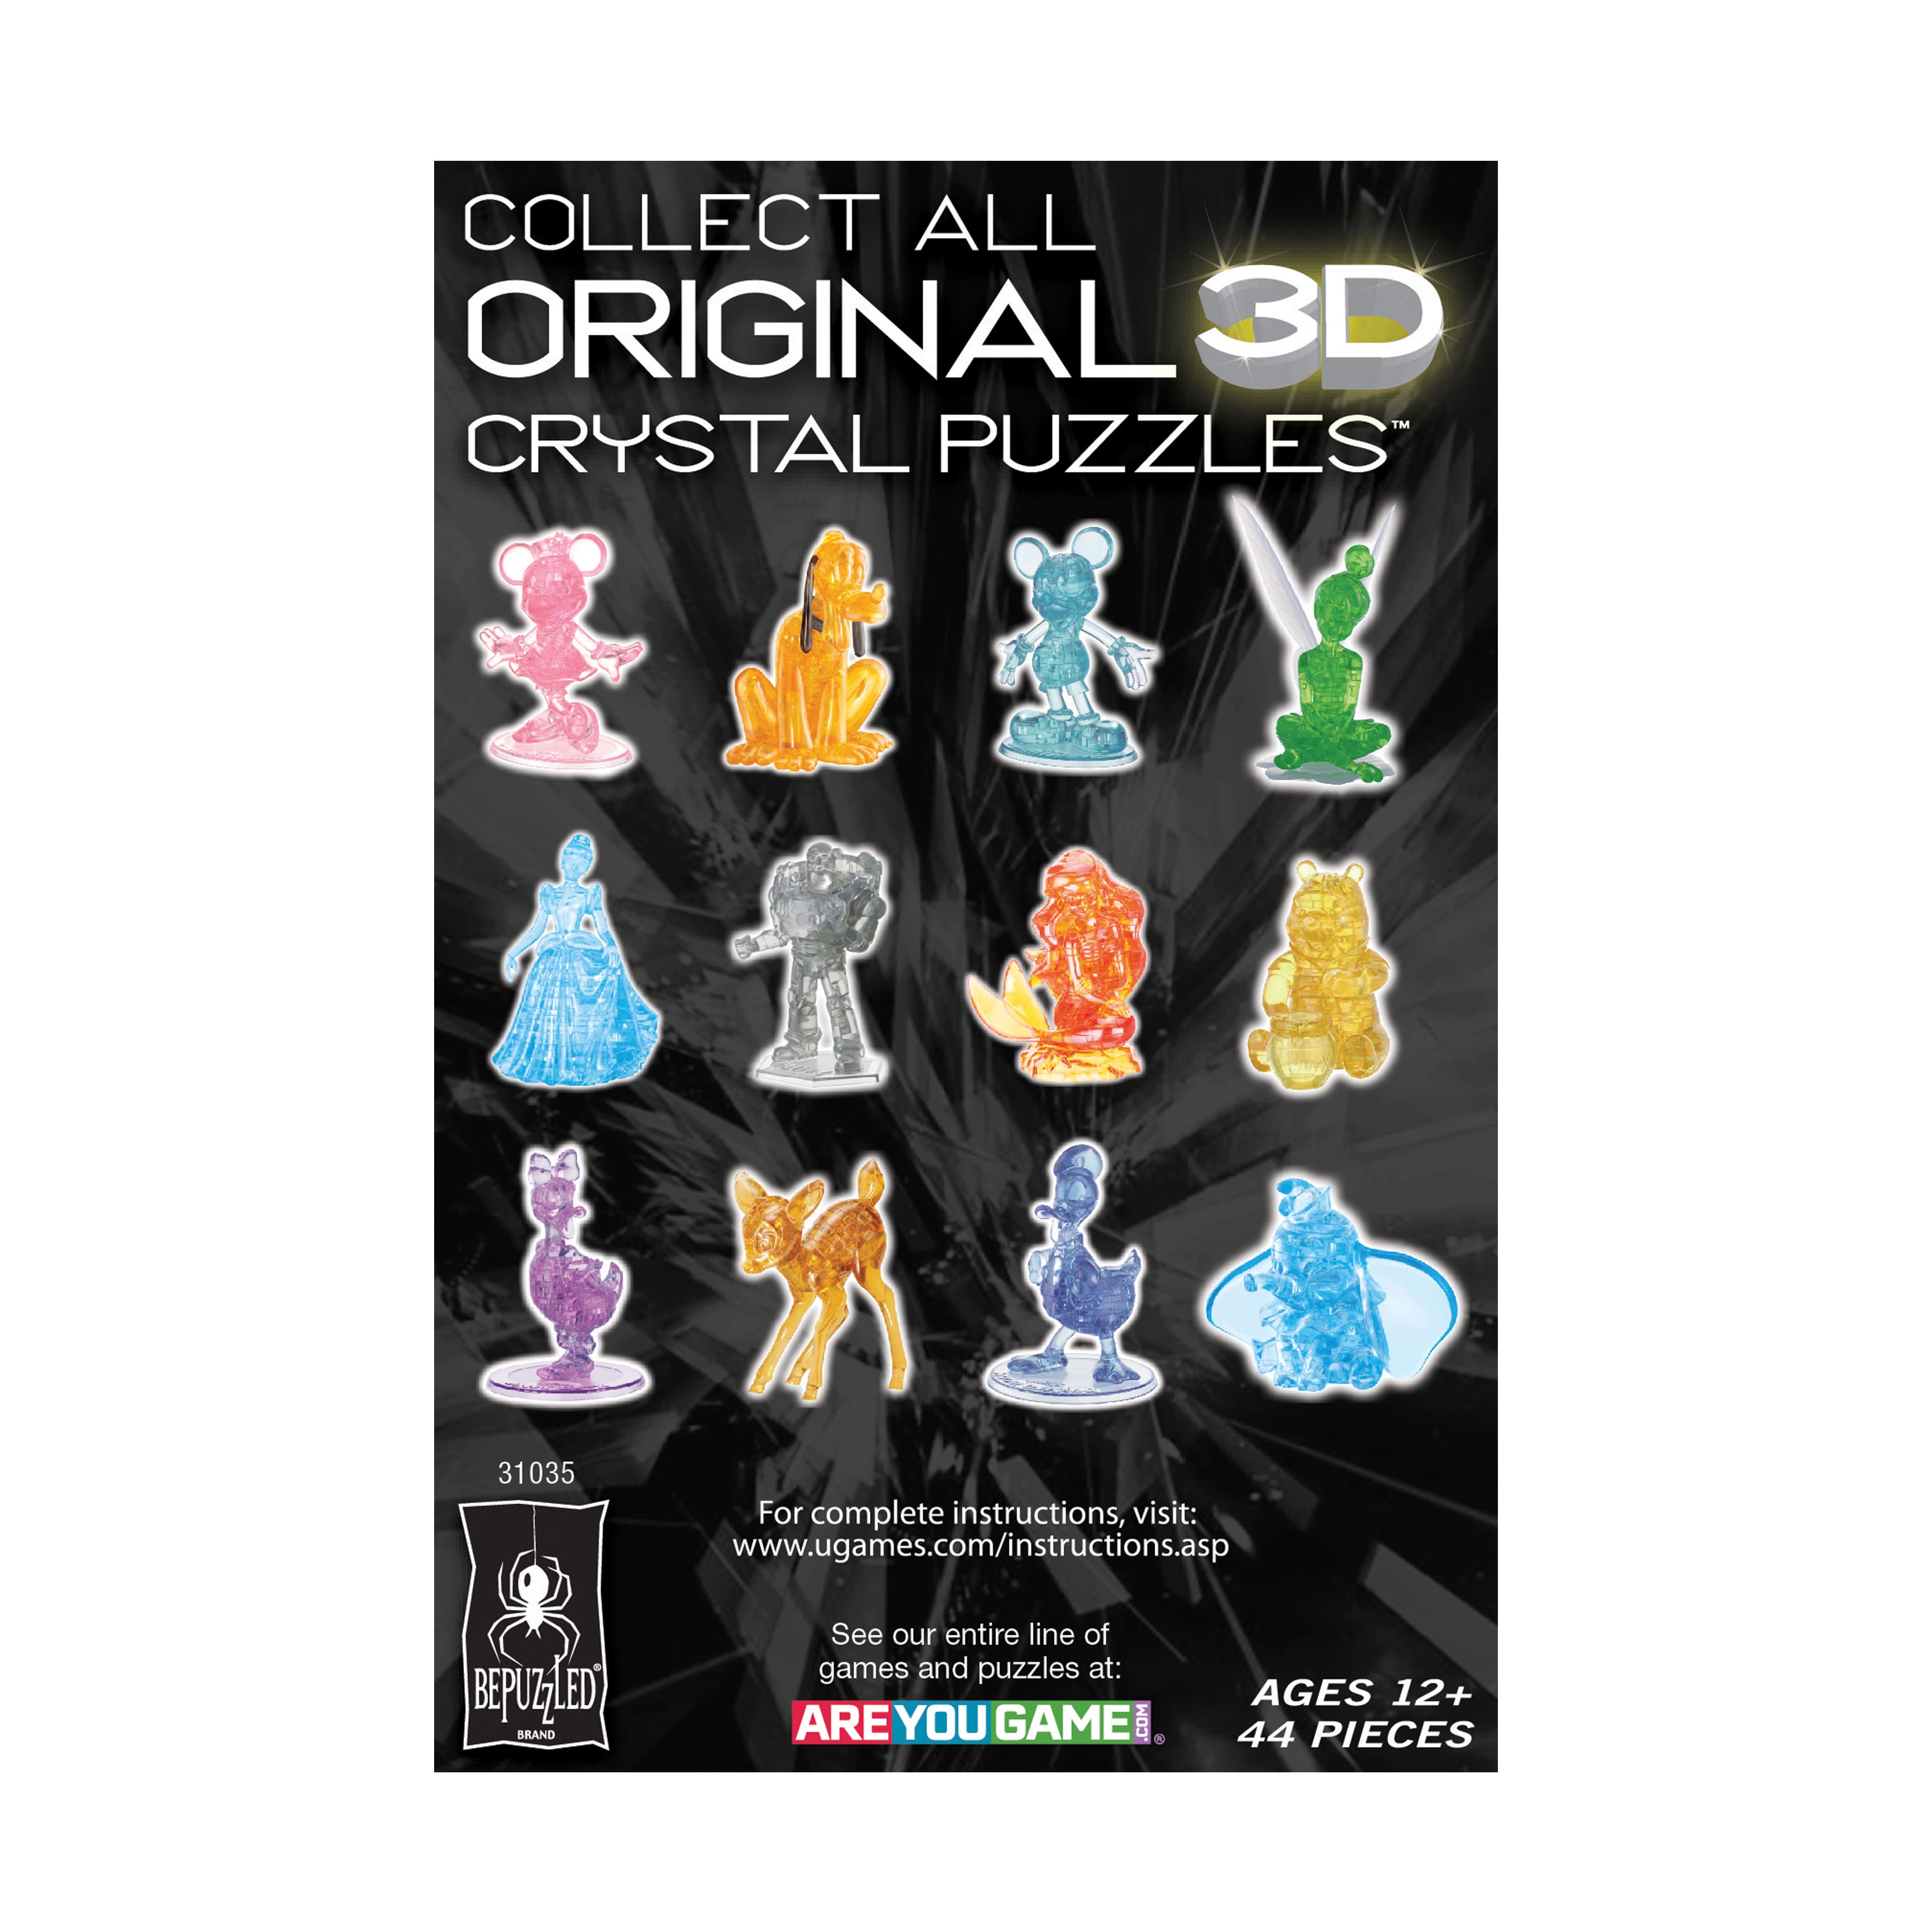 3D Crystal Puzzle - Disney Ursula: 44 Pcs